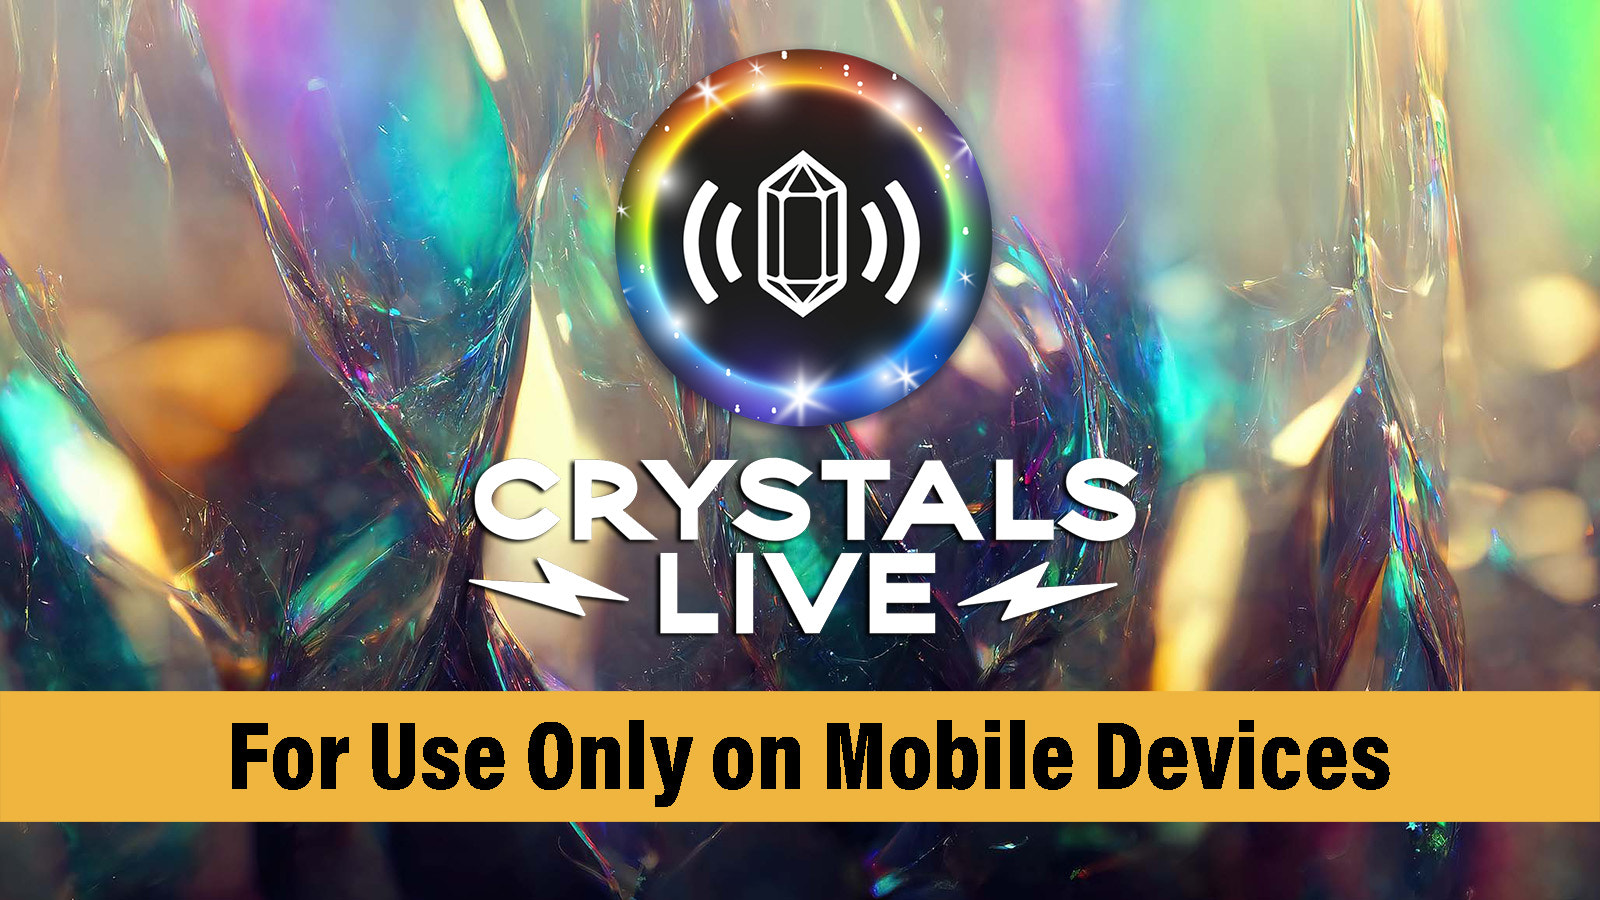 Crystals Live es una Aplicación Solo para Móviles